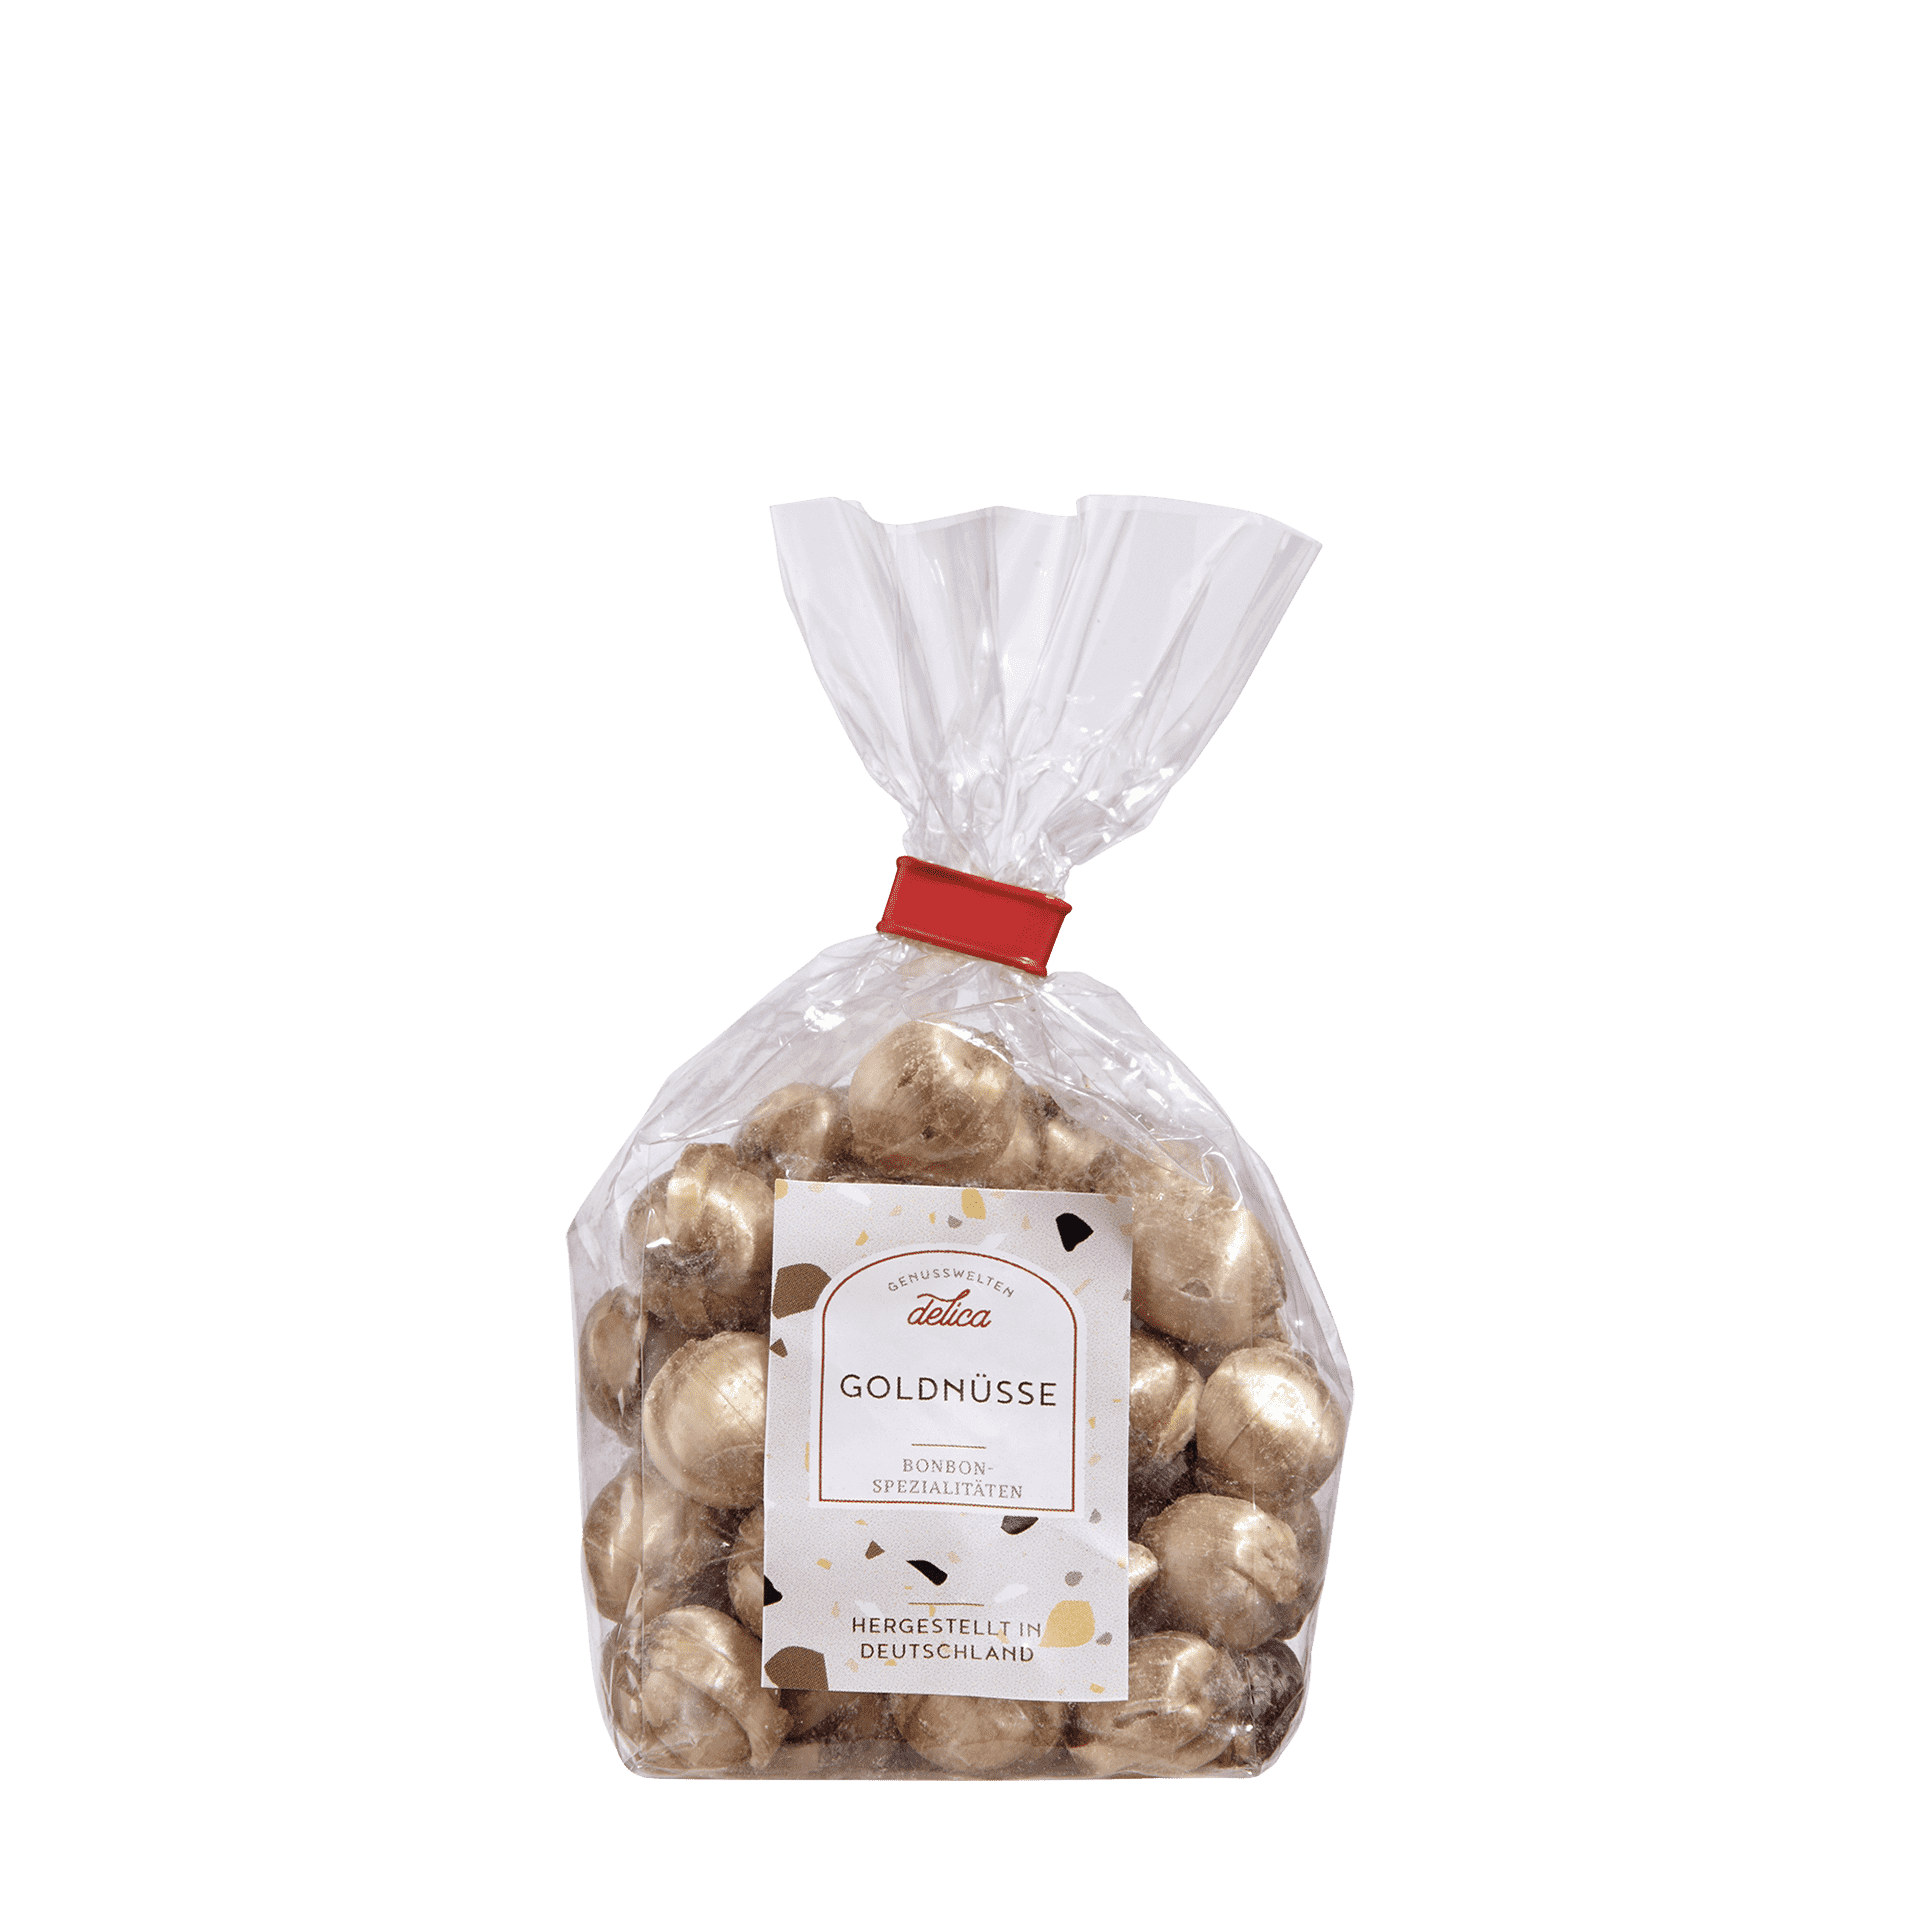 Goldnüsse Vanille-Kakao - Bonbon-Spezialität